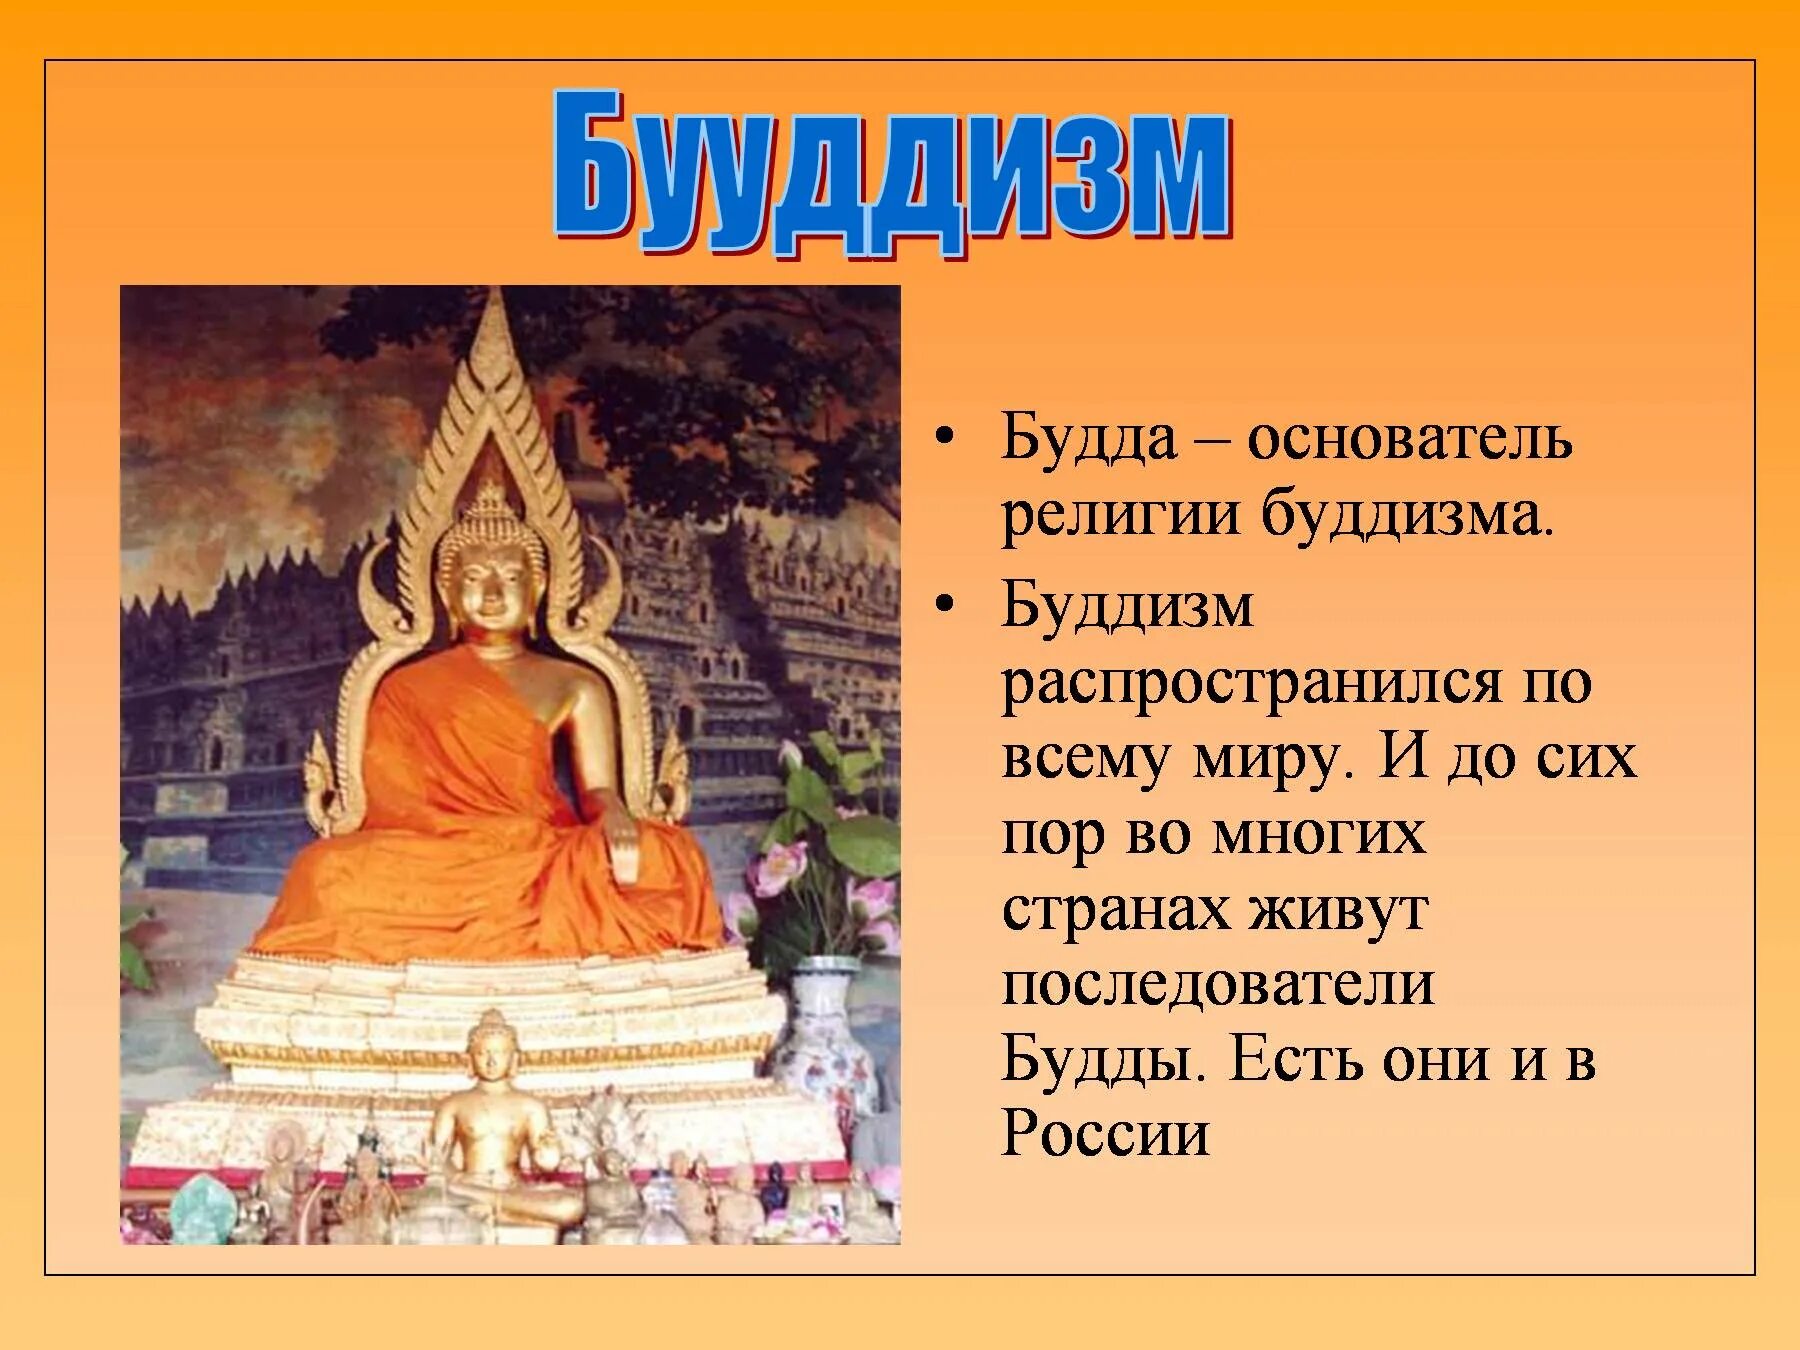 Будда основатель религии буддизма. Будда в древней Индии основатель. Основатель религии Будда 5 класс. Будда Шакьямуни древнее изображение.